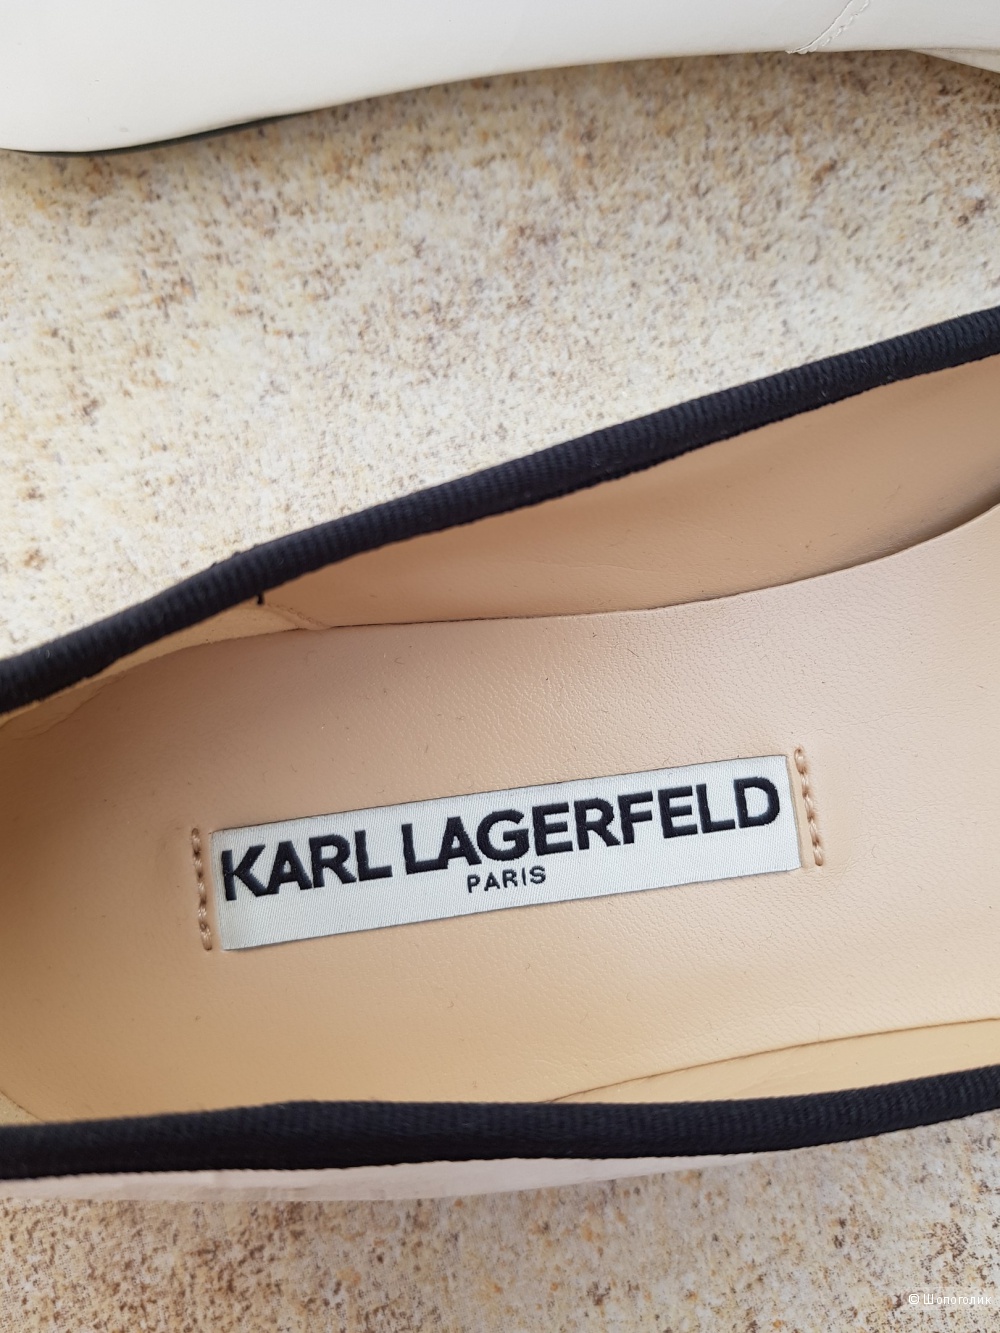 Балетки Karl Lagerfeld  Paris. Размер 8